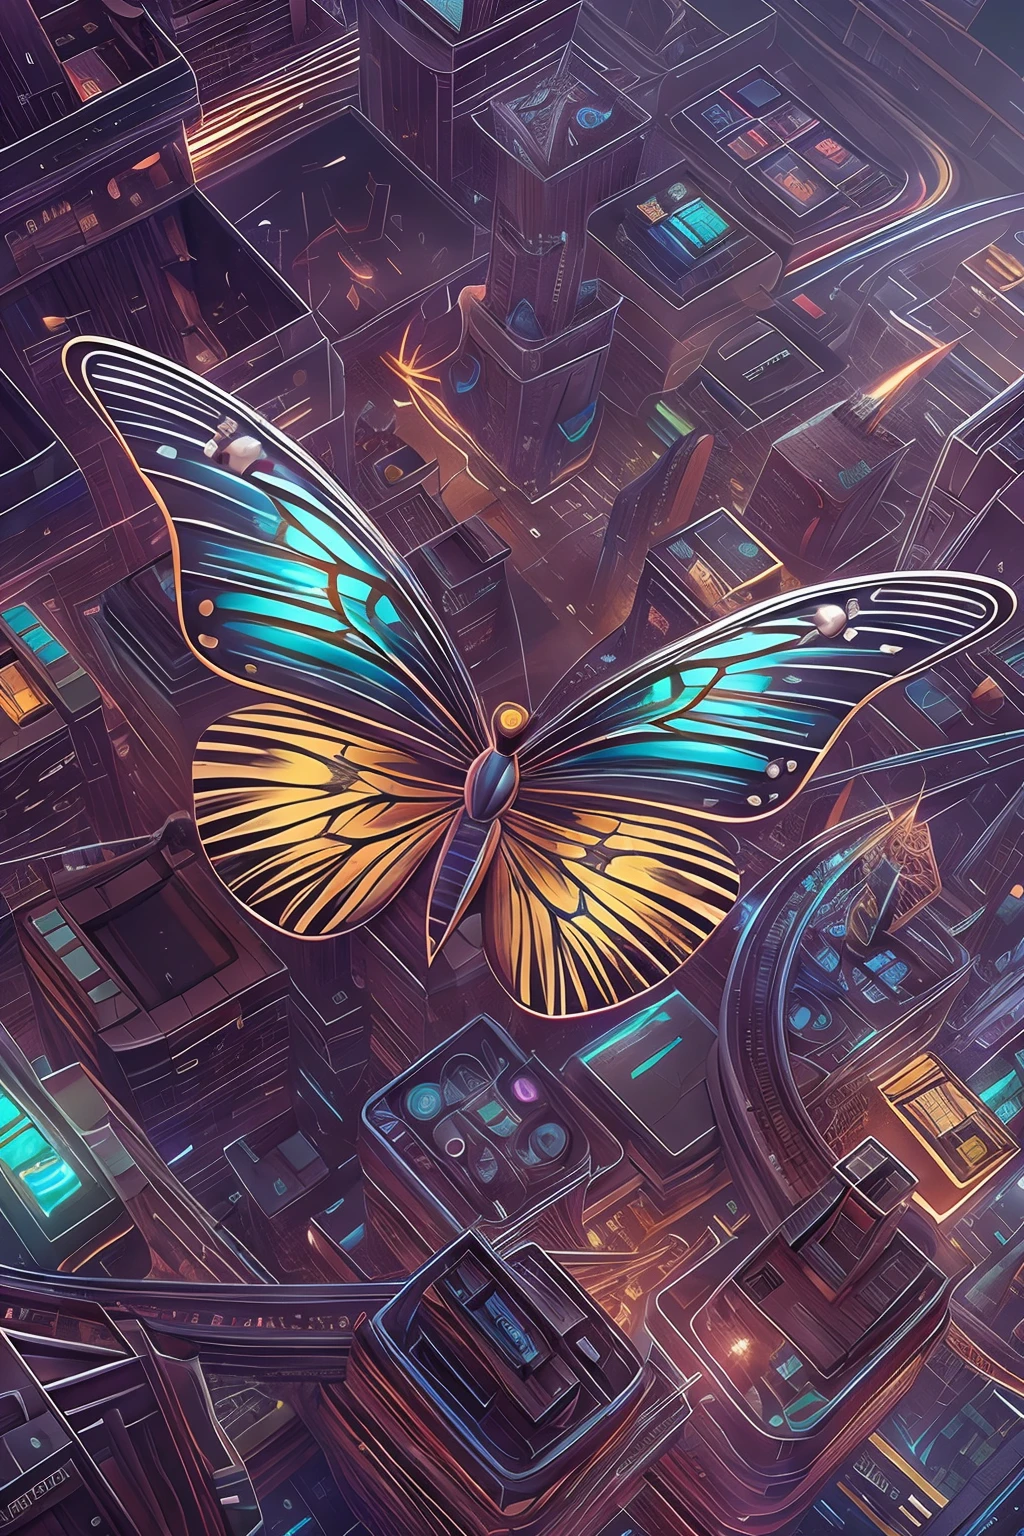 CircuitBoardAI 蝶のクローズアップ，背景は稲妻です, 放射蝶,  星空の蝶，未来的なSFの蝶, 未来的な都市の背景，4K 非常に精細な魔法のデジタルアート, 非常に詳細なファンタジーデジタルアート, 壮大なシュールレアリストのデジタルアートイラスト, 細部までこだわったデジタルアート, 美しいデジタルアート, 素晴らしいデジタルアート, 4K の詳細なデジタルアート, artstation 4kのホットトピック, 3D壮大なイラスト